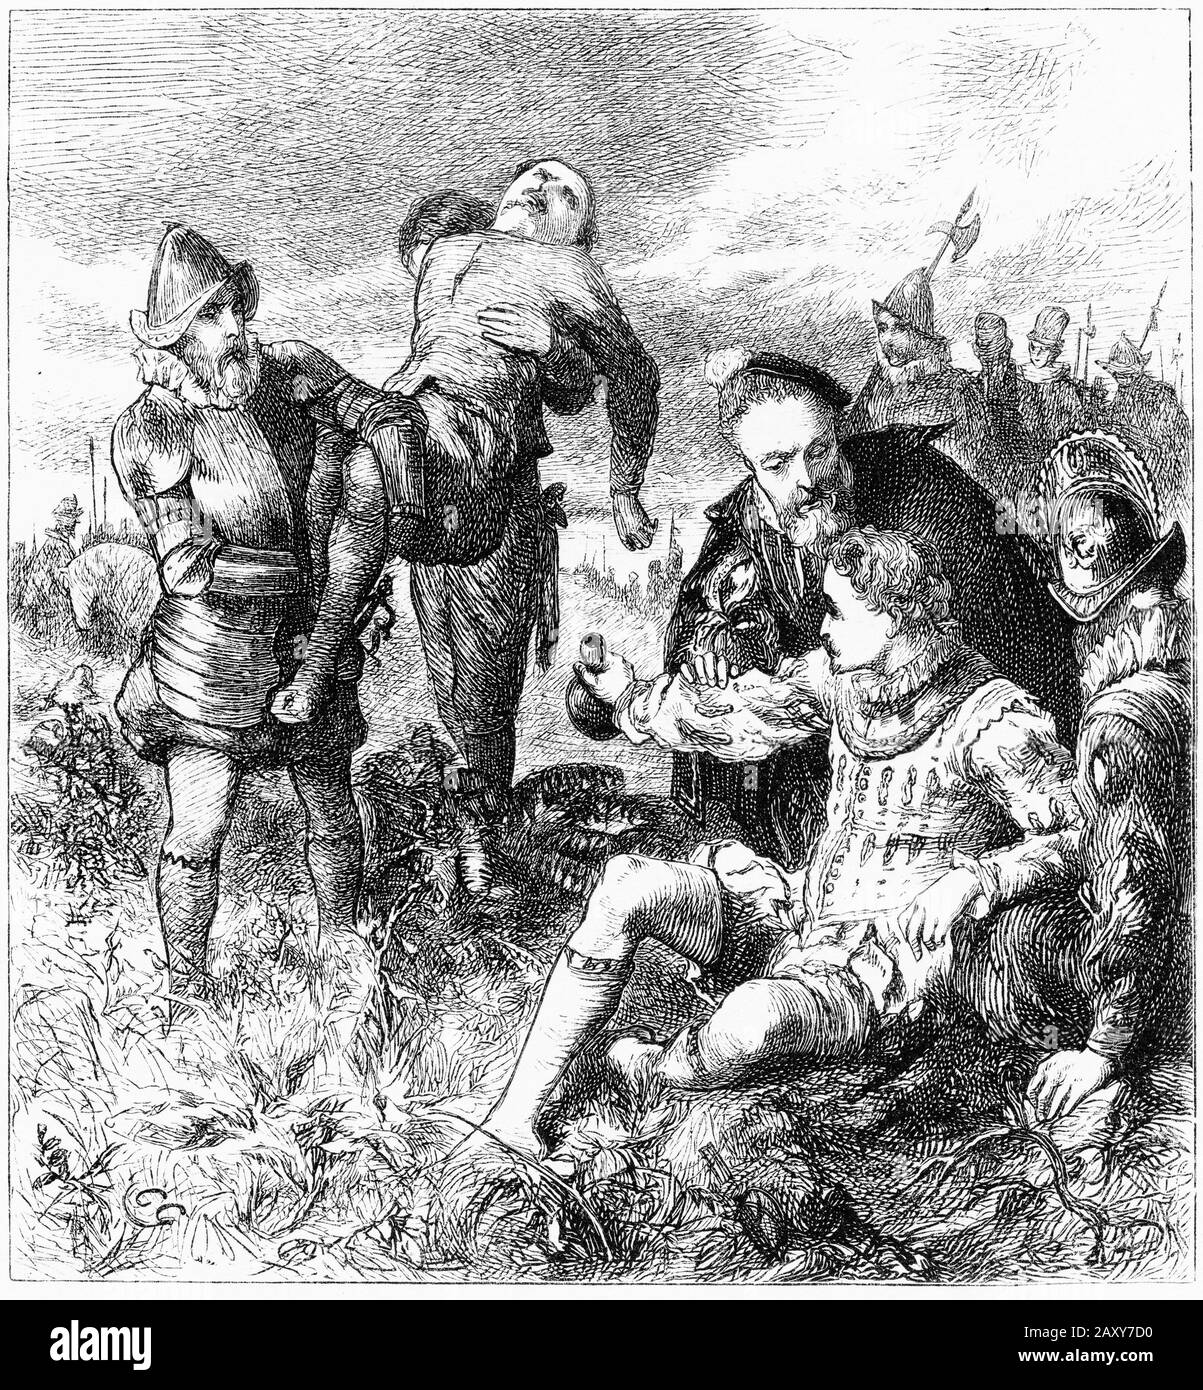 Engravingt de Sir Philip Sidney (1554 – 1586) poète, courtier, érudit et soldat anglais qui est rappelé comme l'une des figures les plus importantes de l'âge élisabéthain, et surtout pour sa valor égoïste sur le champ de bataille de Zutphen en en 1586. Tout en restant blessé, il a donné son eau à un autre soldat blessé, disant: "Thy nécessité est encore plus grande que la mienne". Banque D'Images